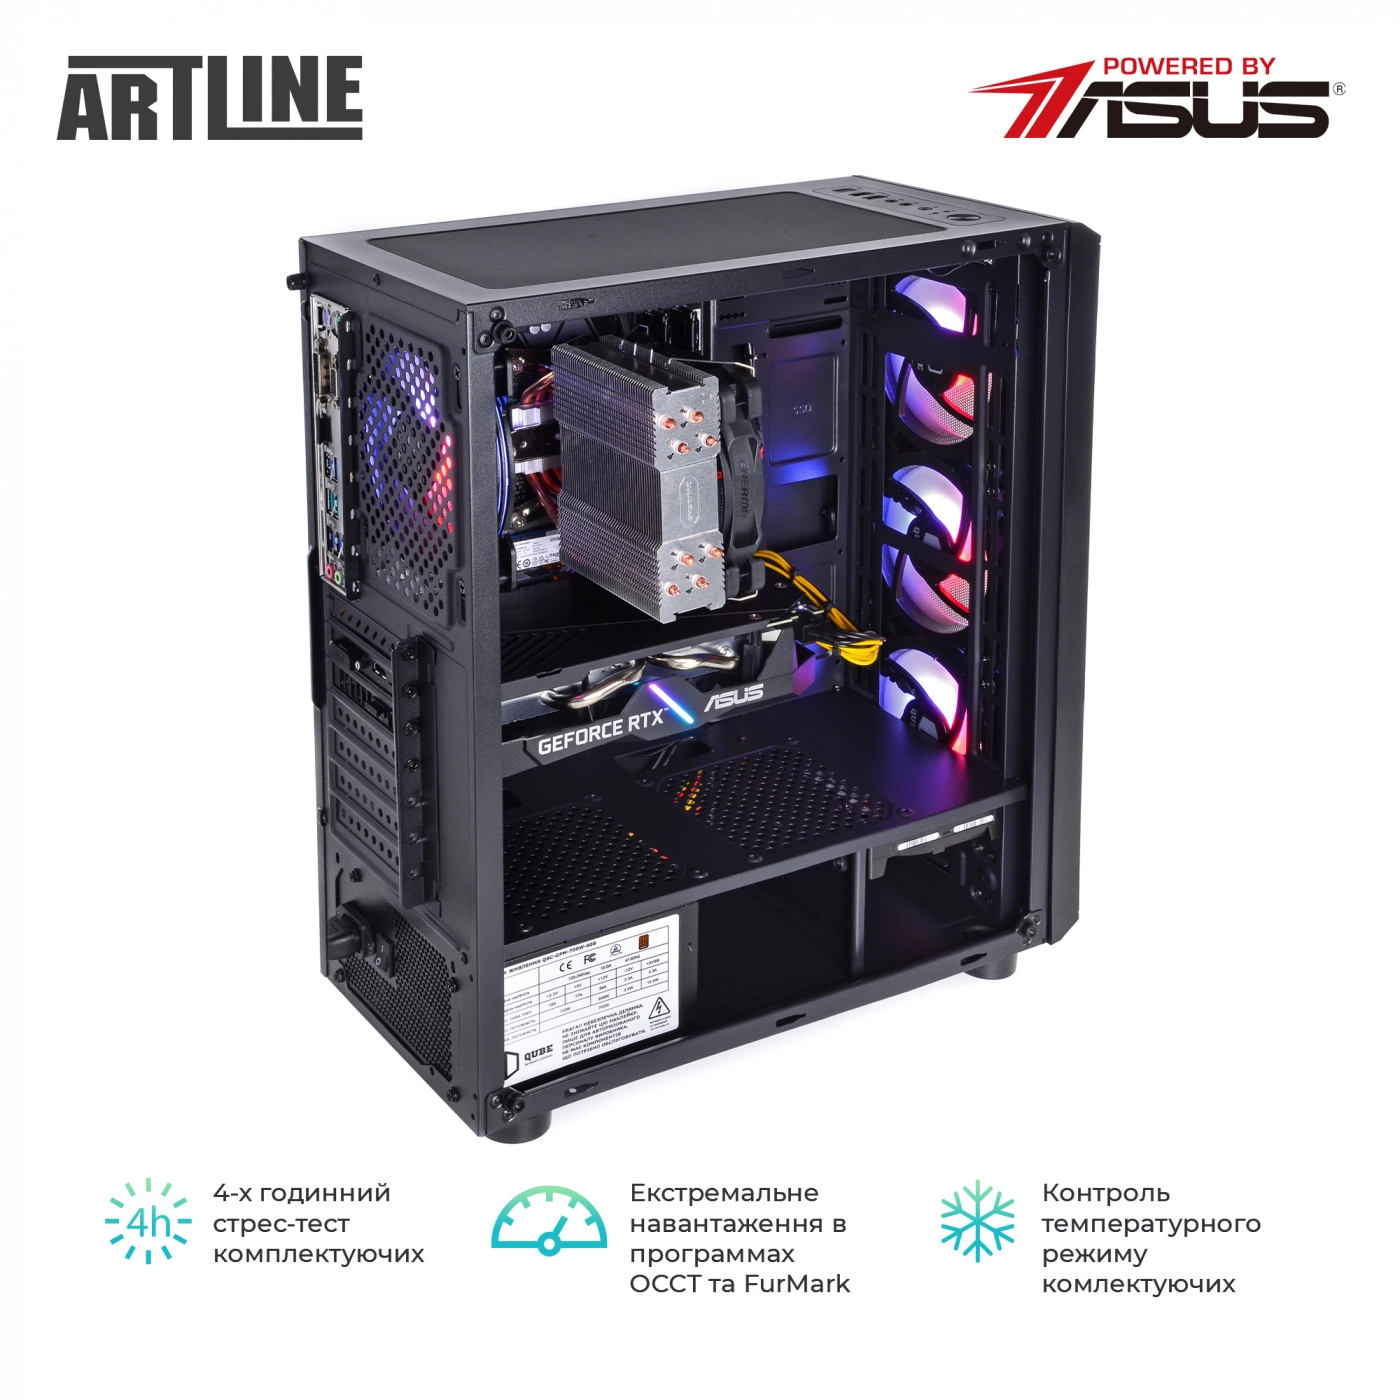 Купить Компьютер ARTLINE Gaming X81v17 - фото 9